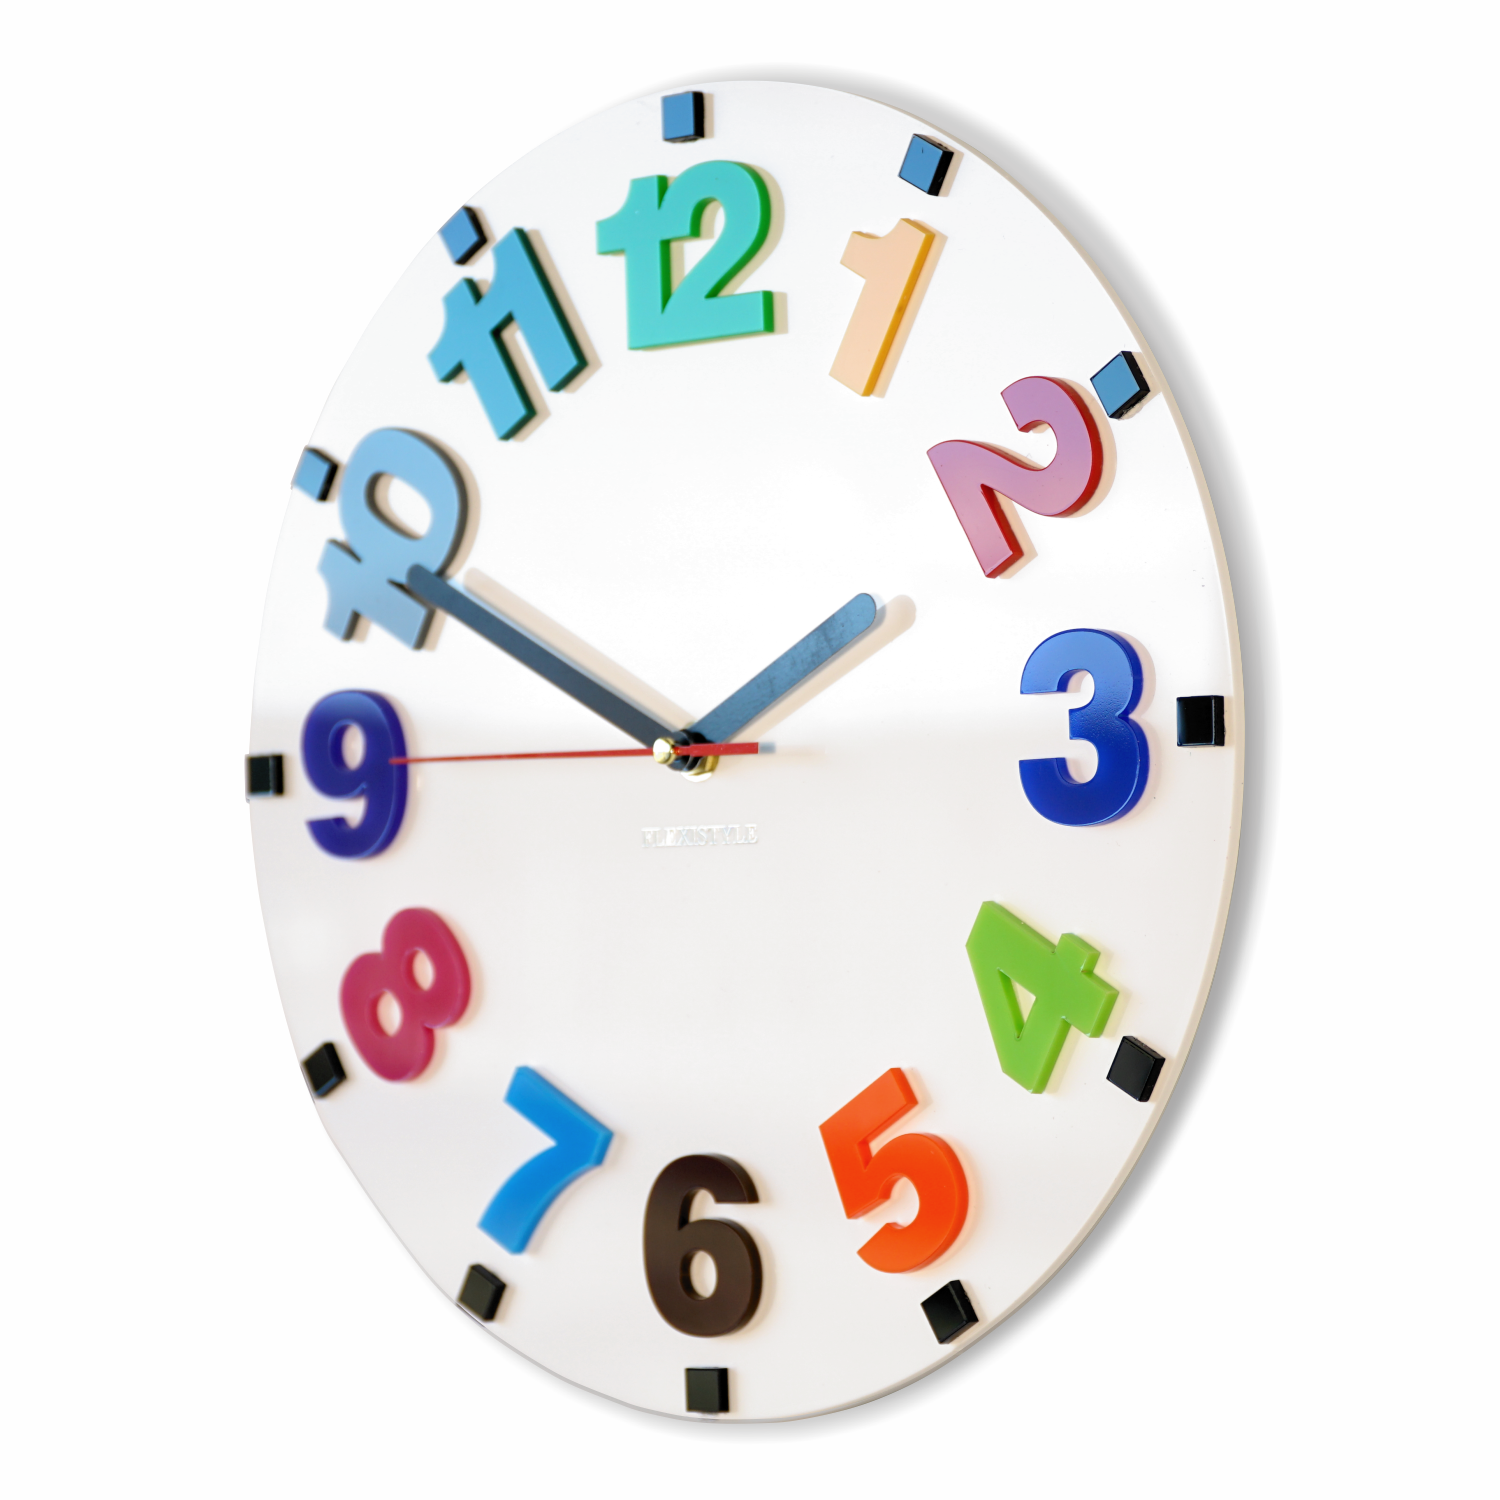 Цифры на часах разные. Часы настенные для детей. Часы с цифрами. Часы настенные с разноцветными цифрами. Часы настенные со стрелками и цифрами.